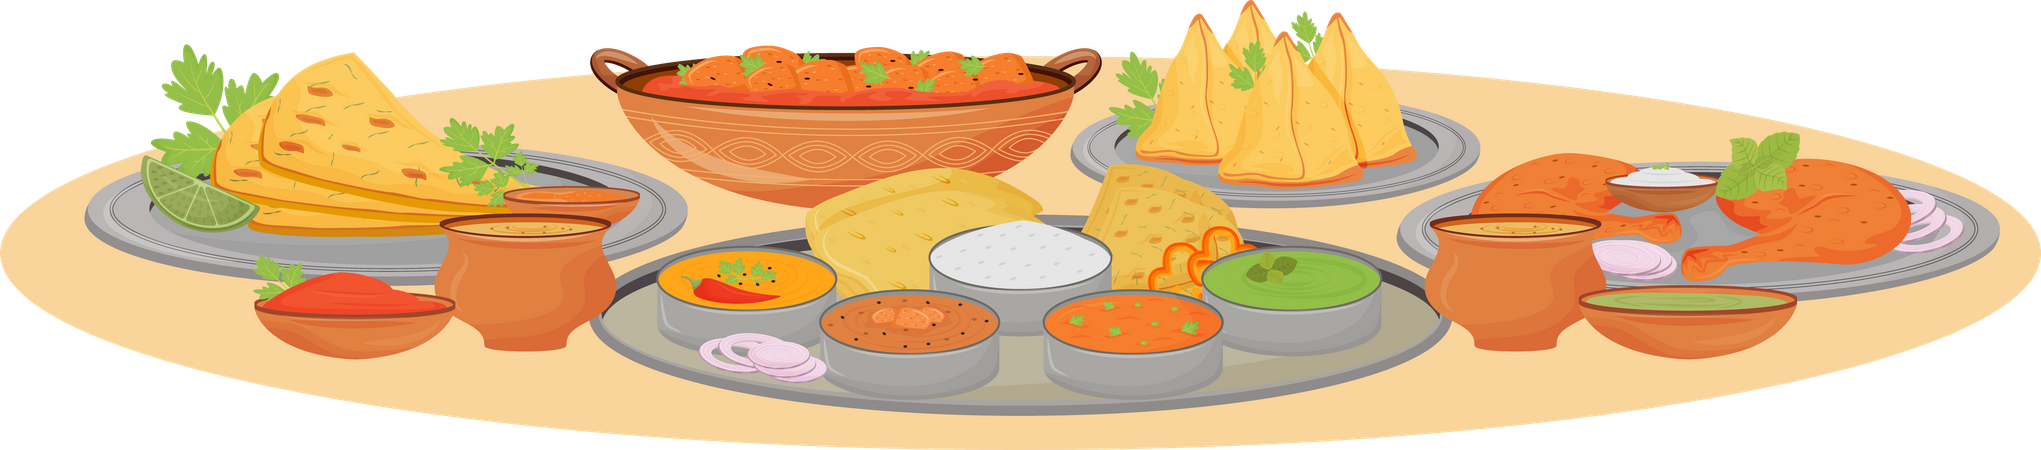 Indian dishes serving Illustration